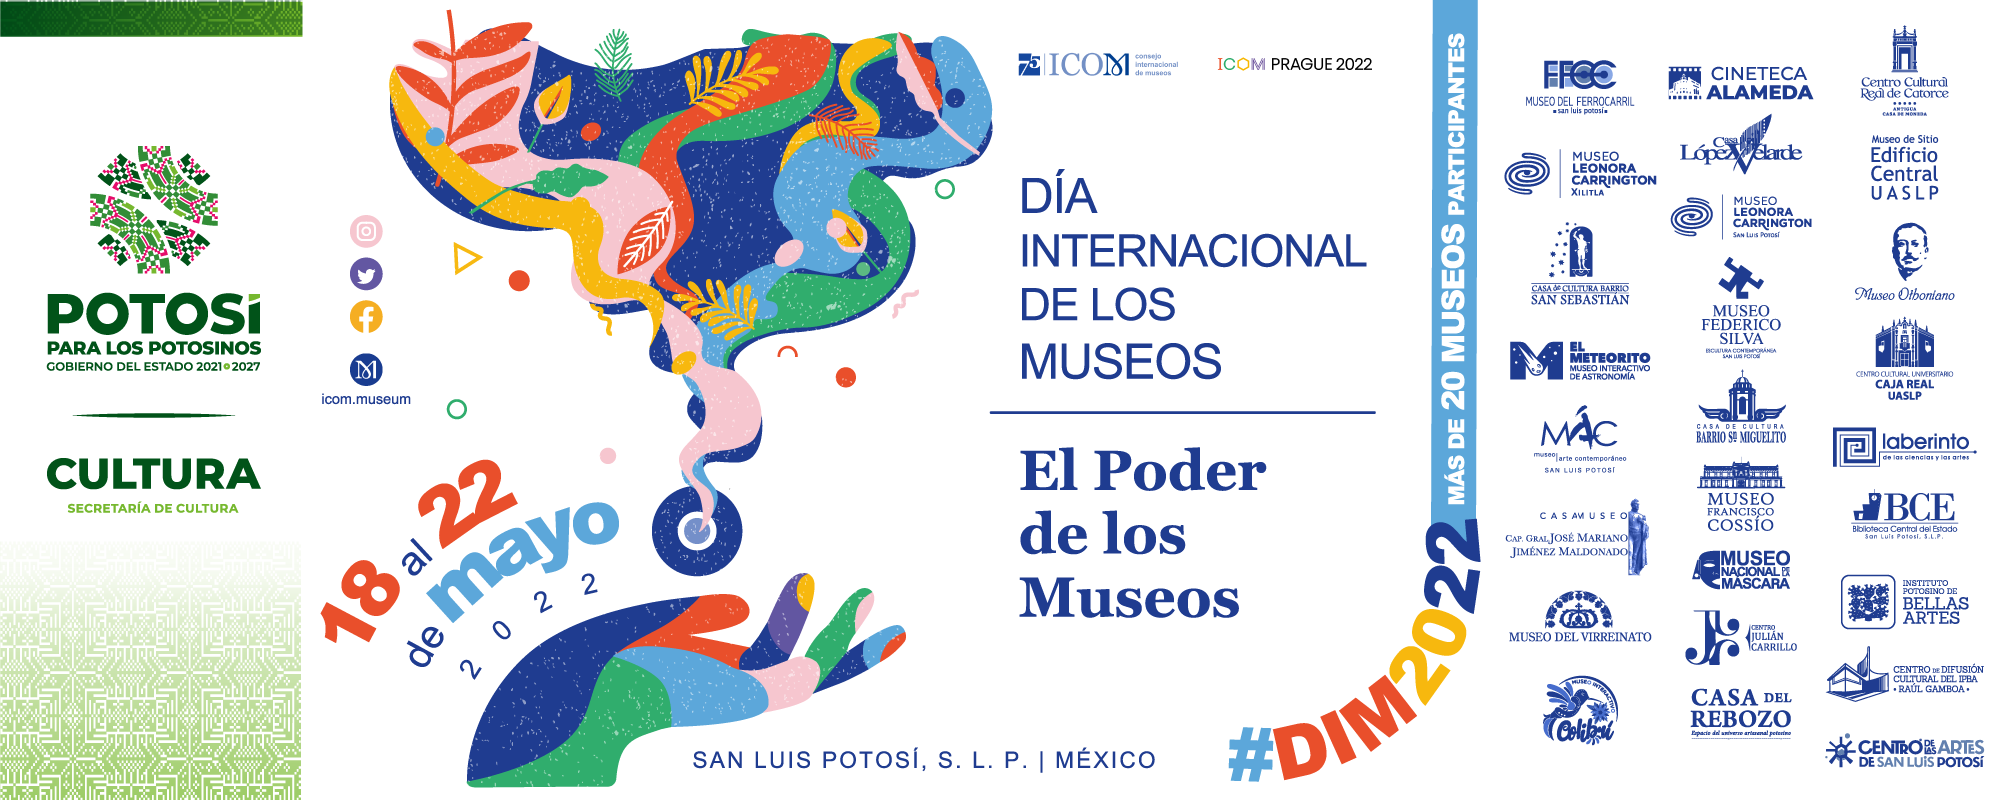 Ya viene el Día Internacional de los Museos